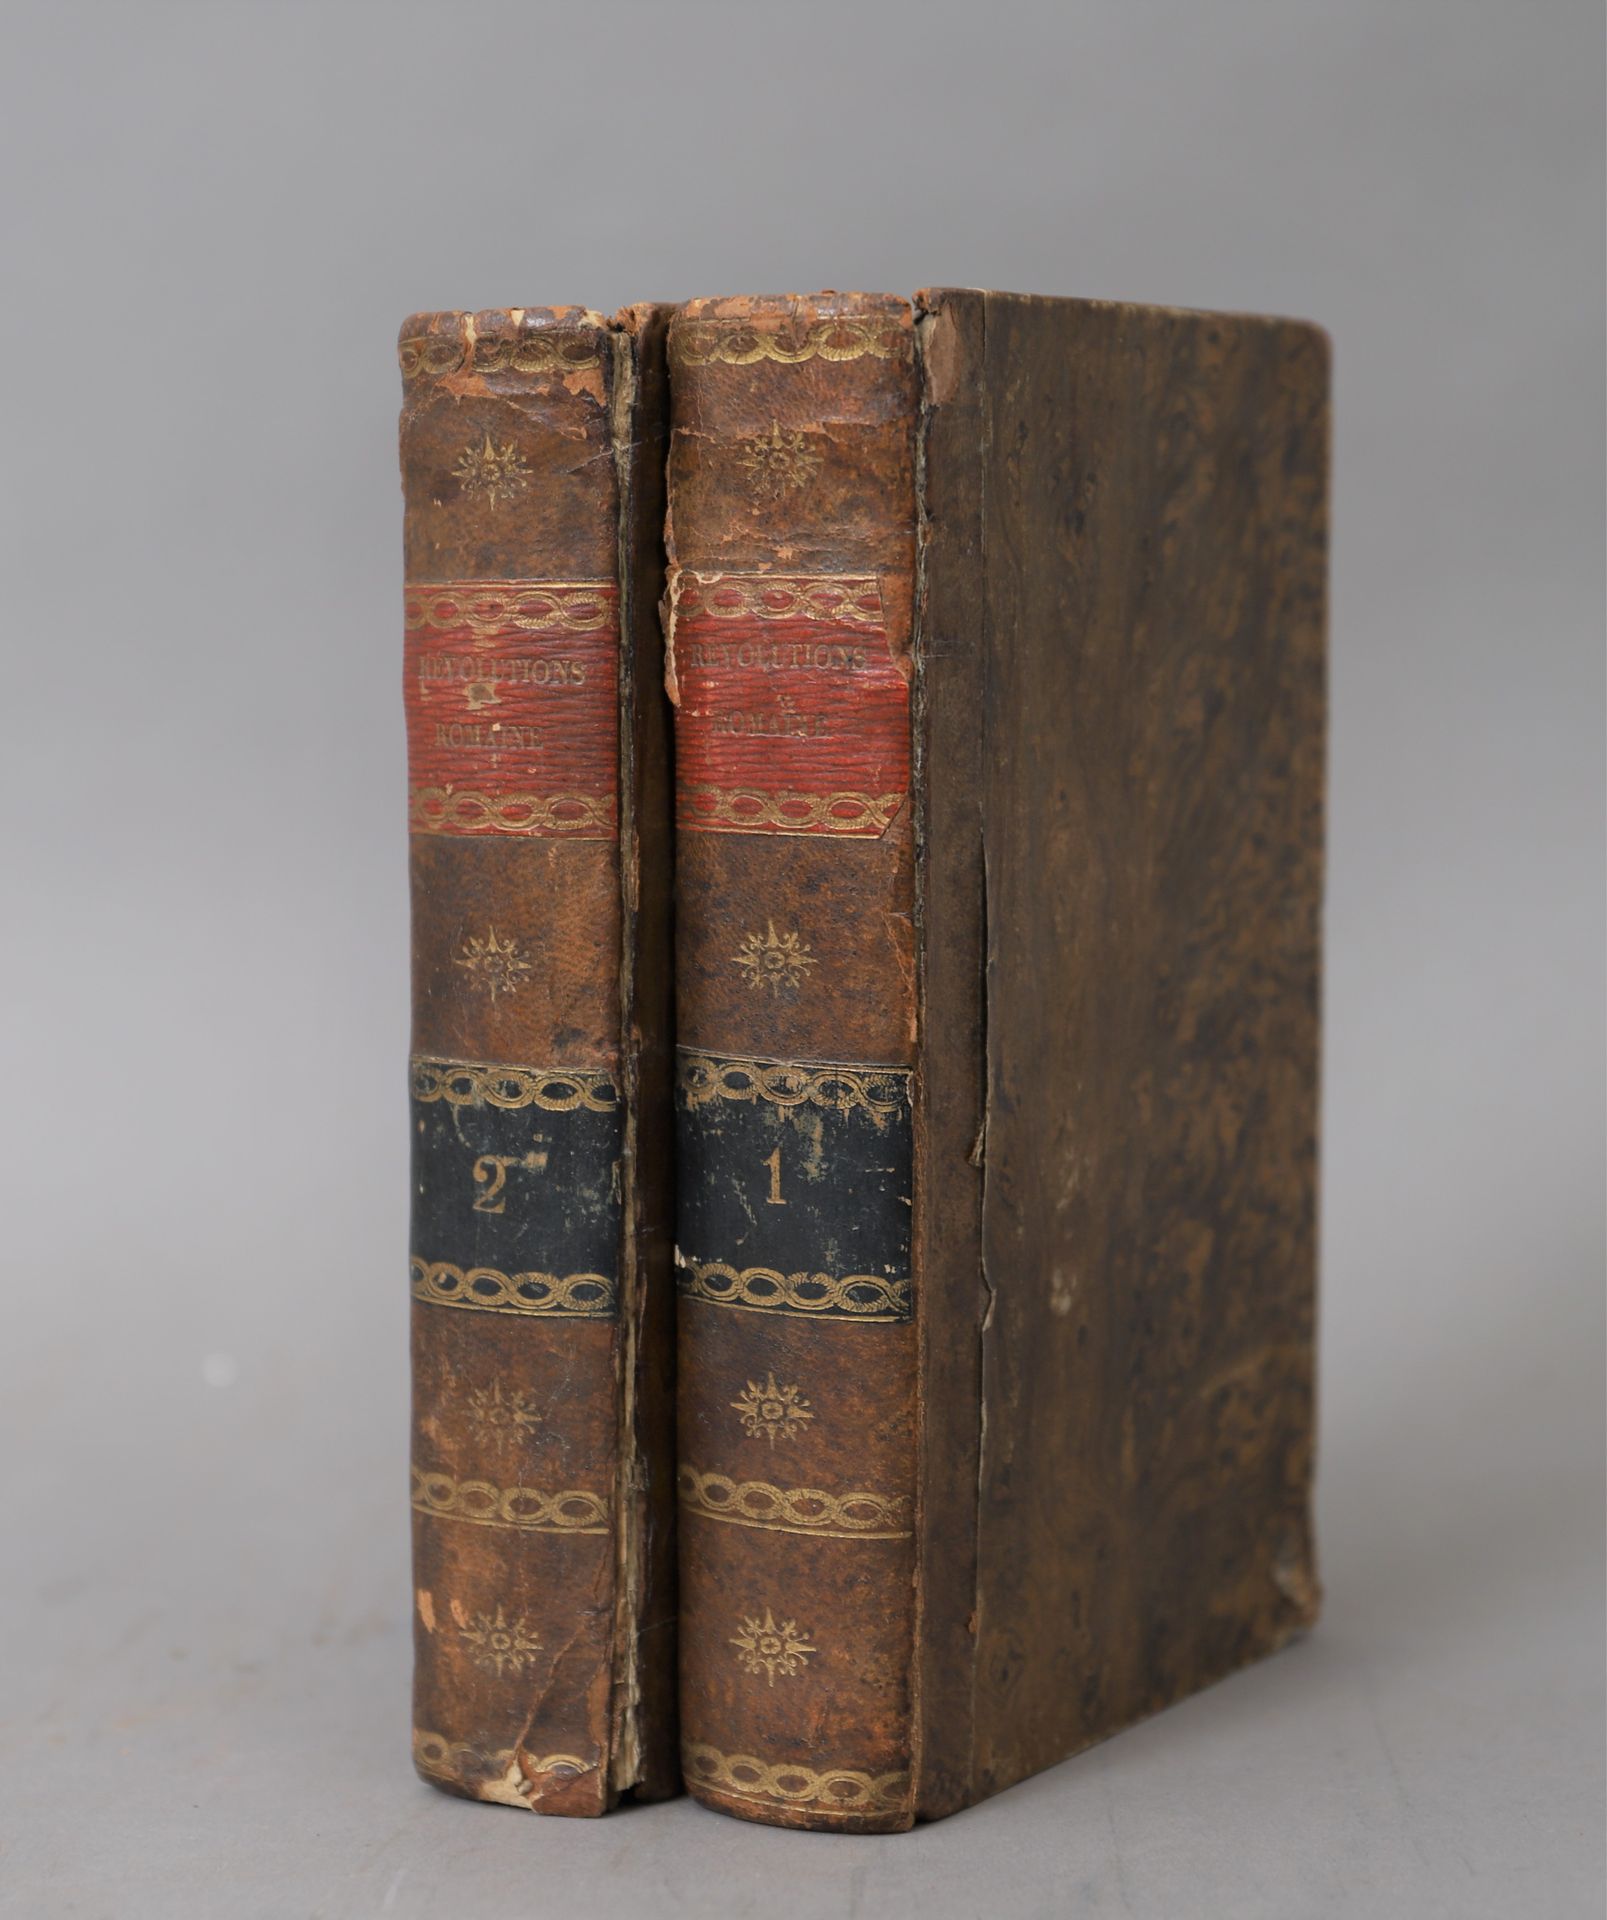 Null HISTORIA de las REVOLUCIONES ROMANAS

1810

2 volúmenes encuadernados.